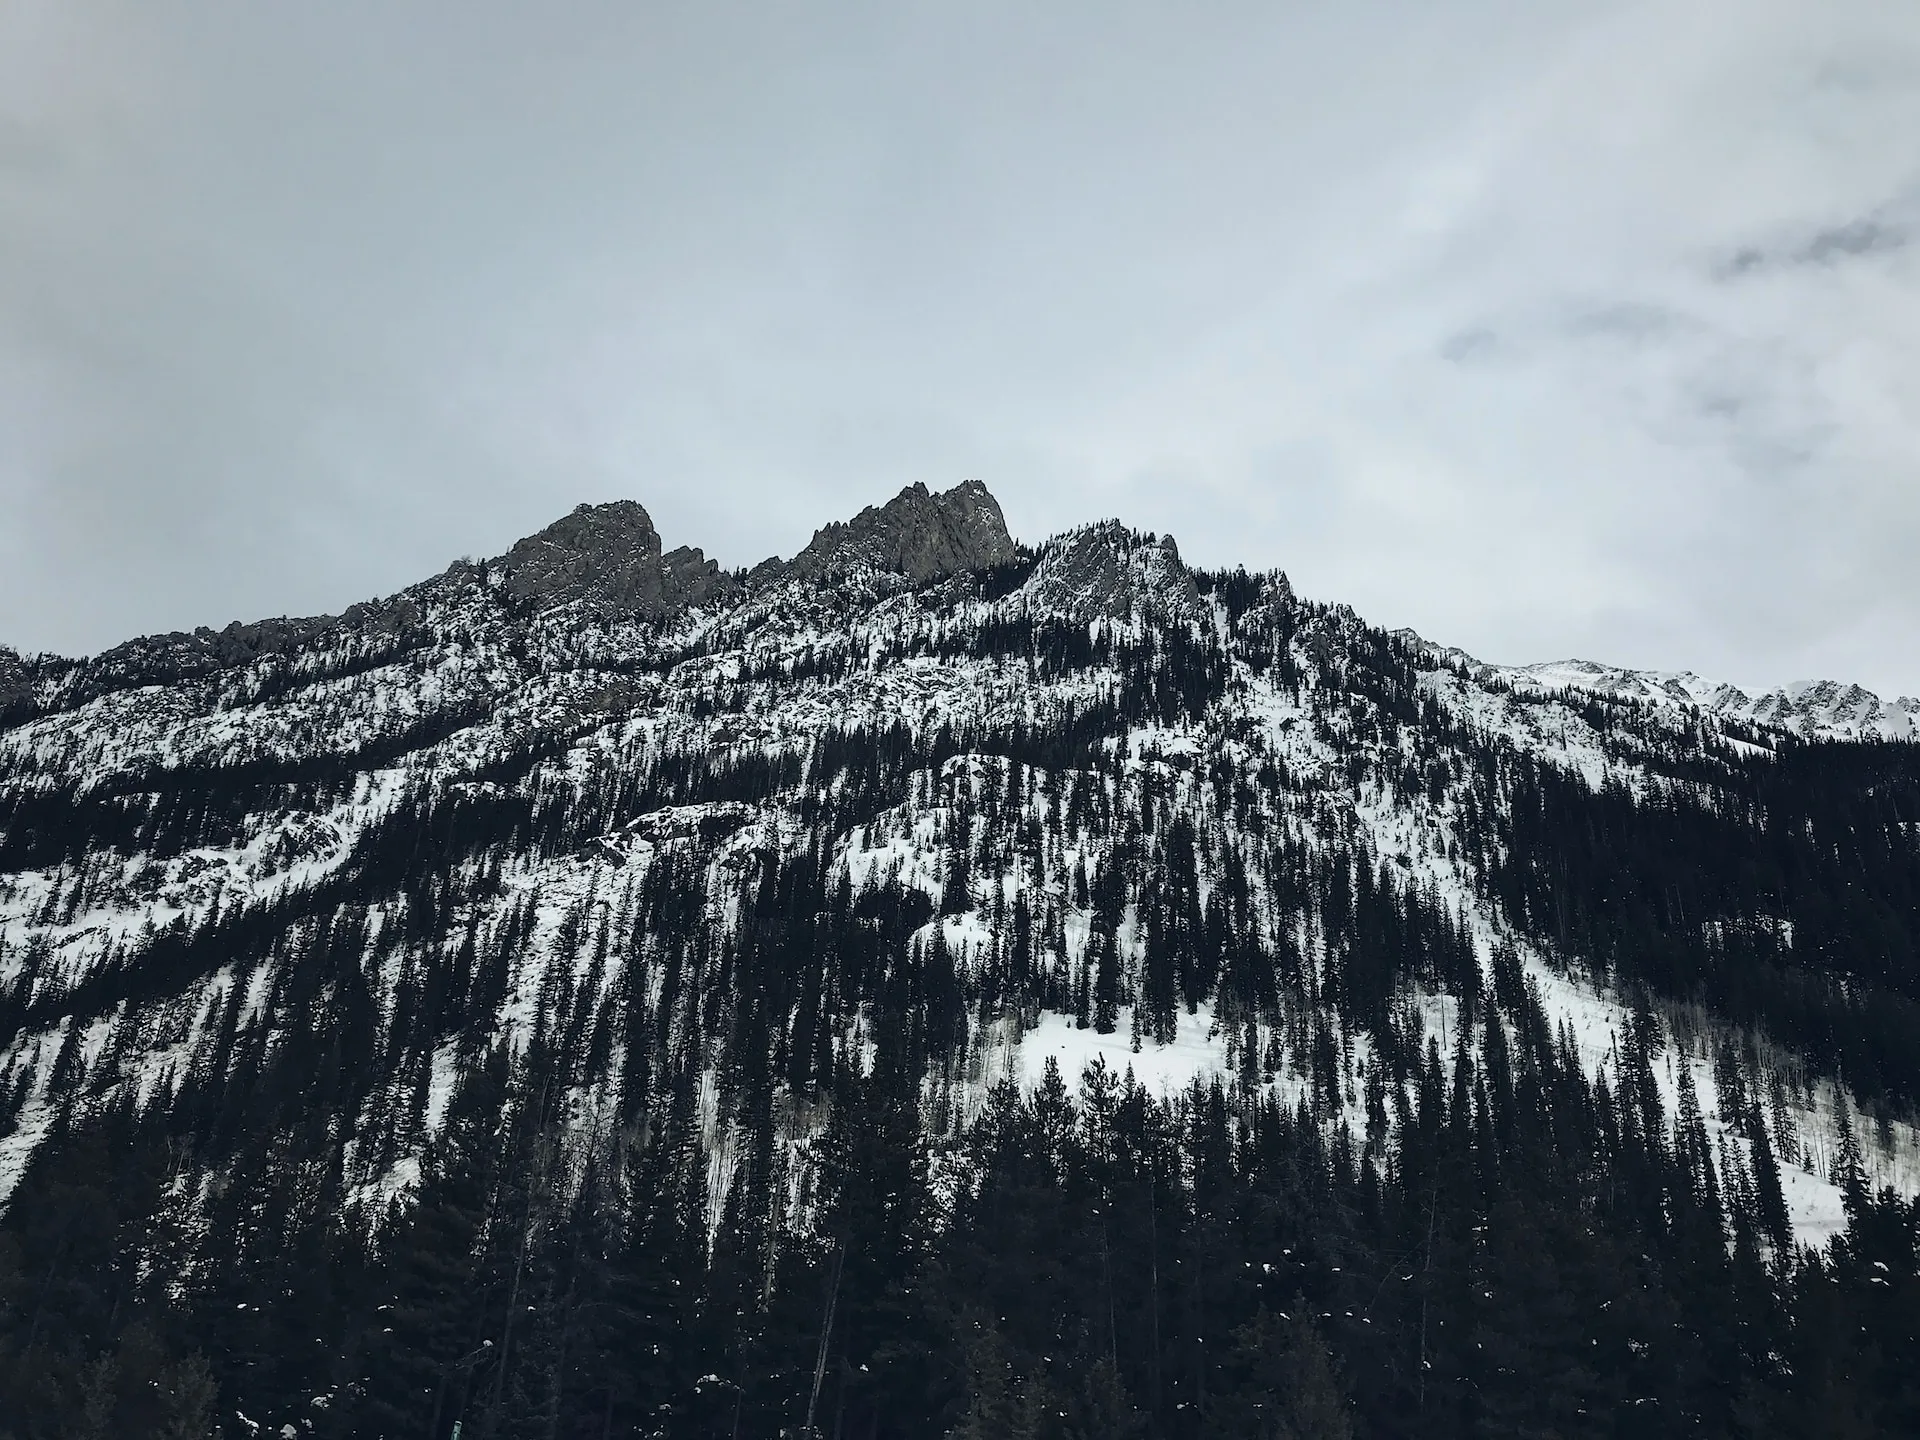 Vail mountain, Colorado